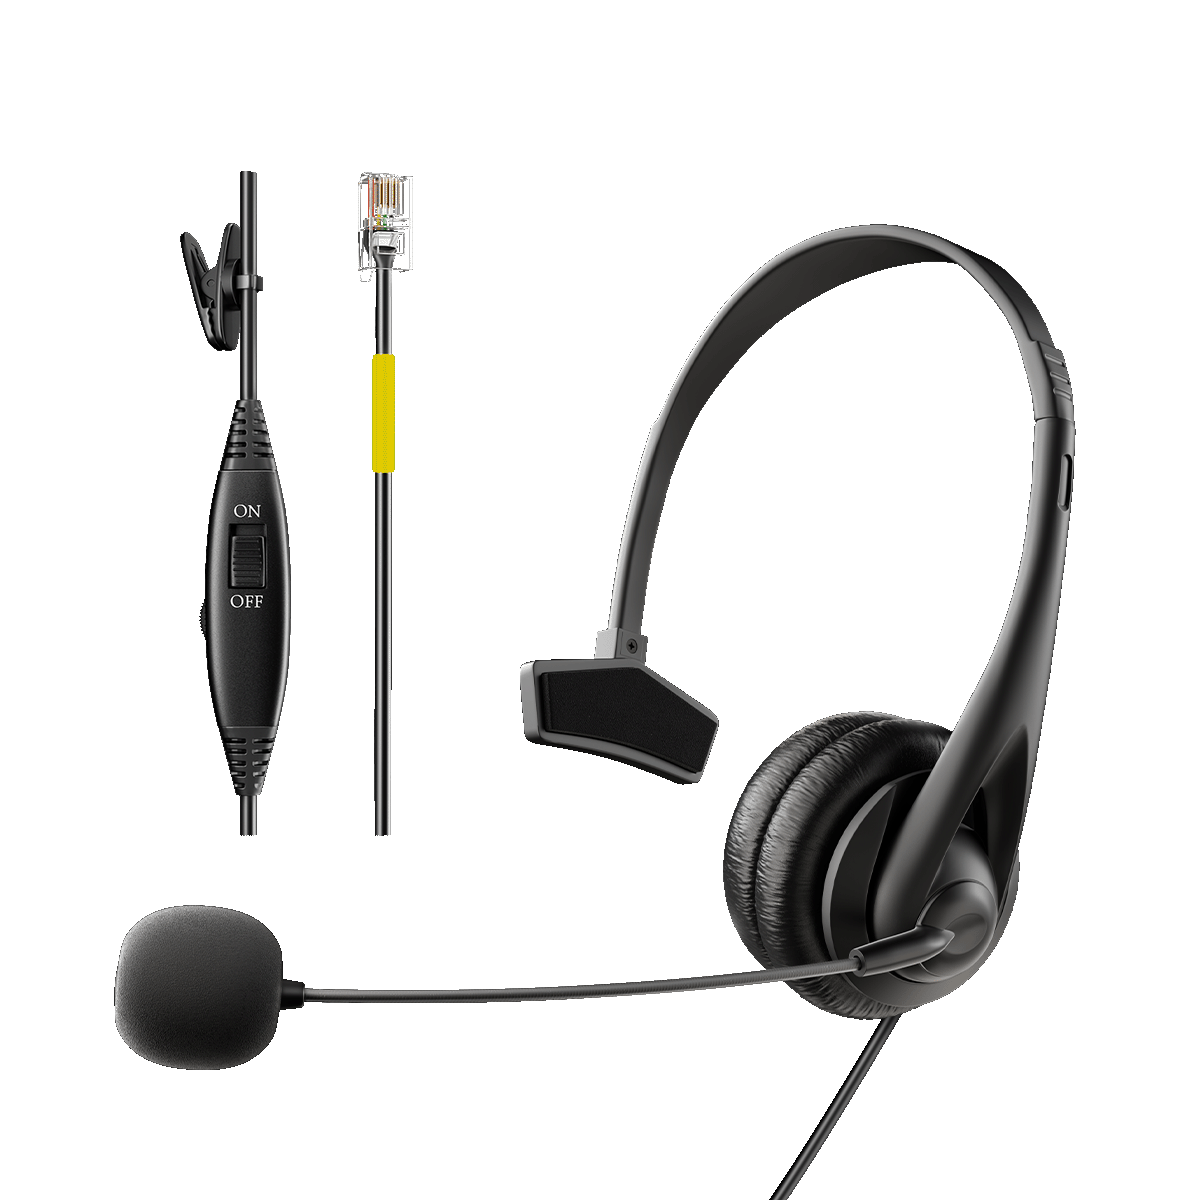 Wantek headset rj4 jack H311 -  Best headset for office